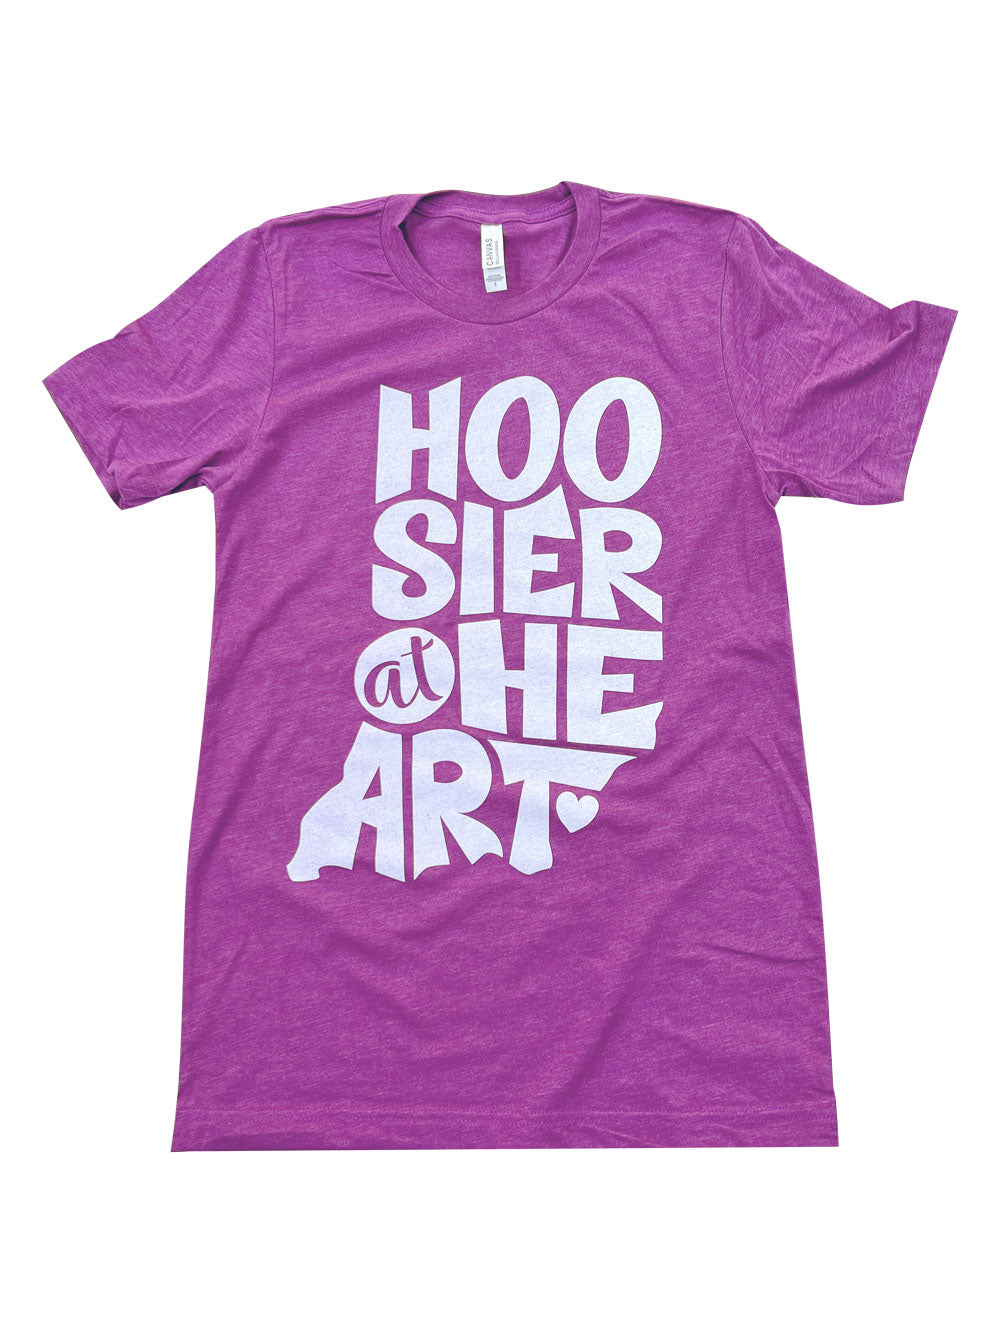 Hoosier at Heart magenta t-shirt